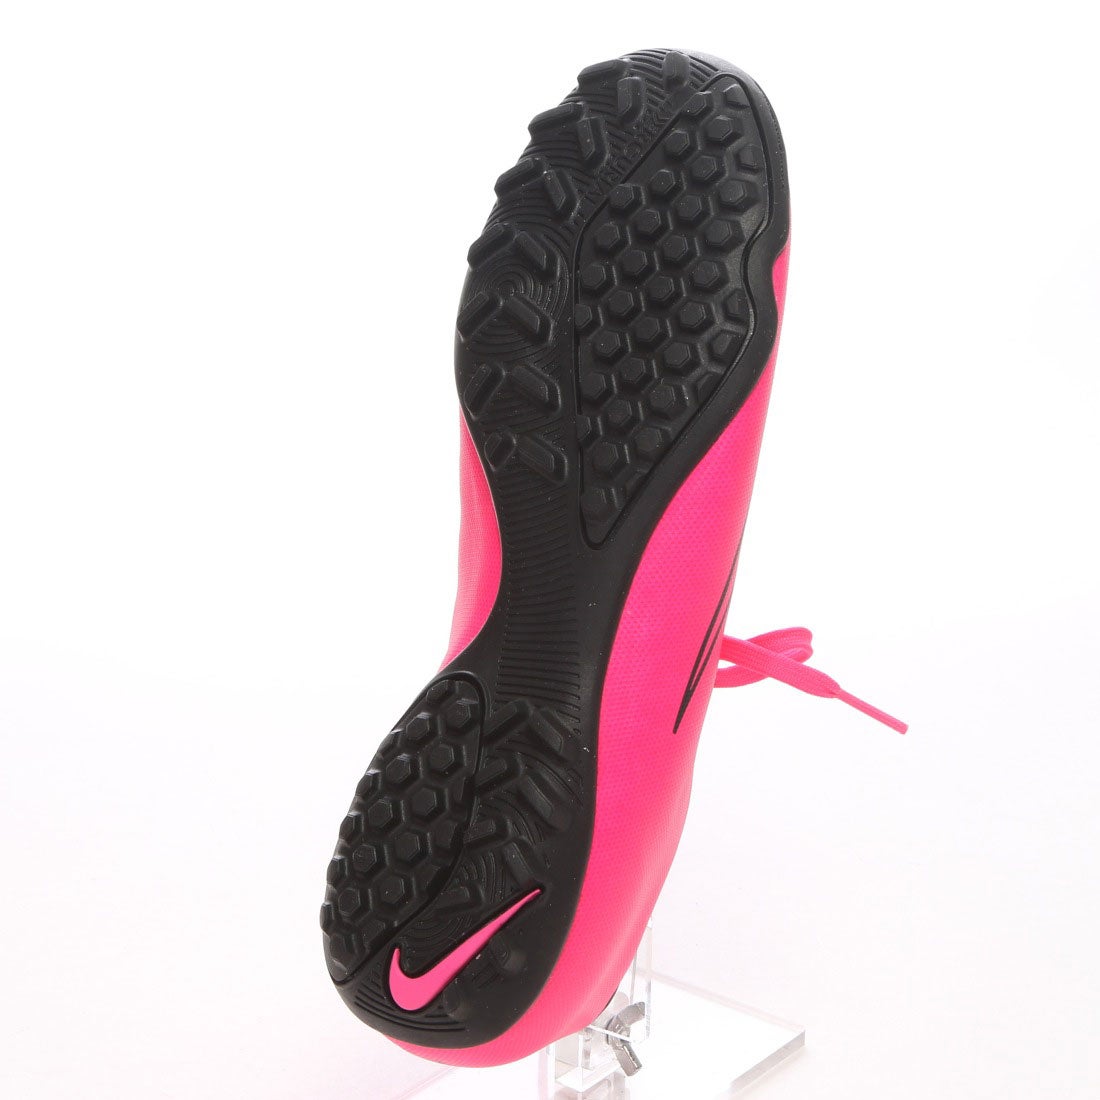 ナイキ Nike サッカートレーニングシューズ マーキュリアル ビクトリー Tf ピンク 3045 ピンクp 靴 ファッション通販 ロコンド 自宅で試着 気軽に返品